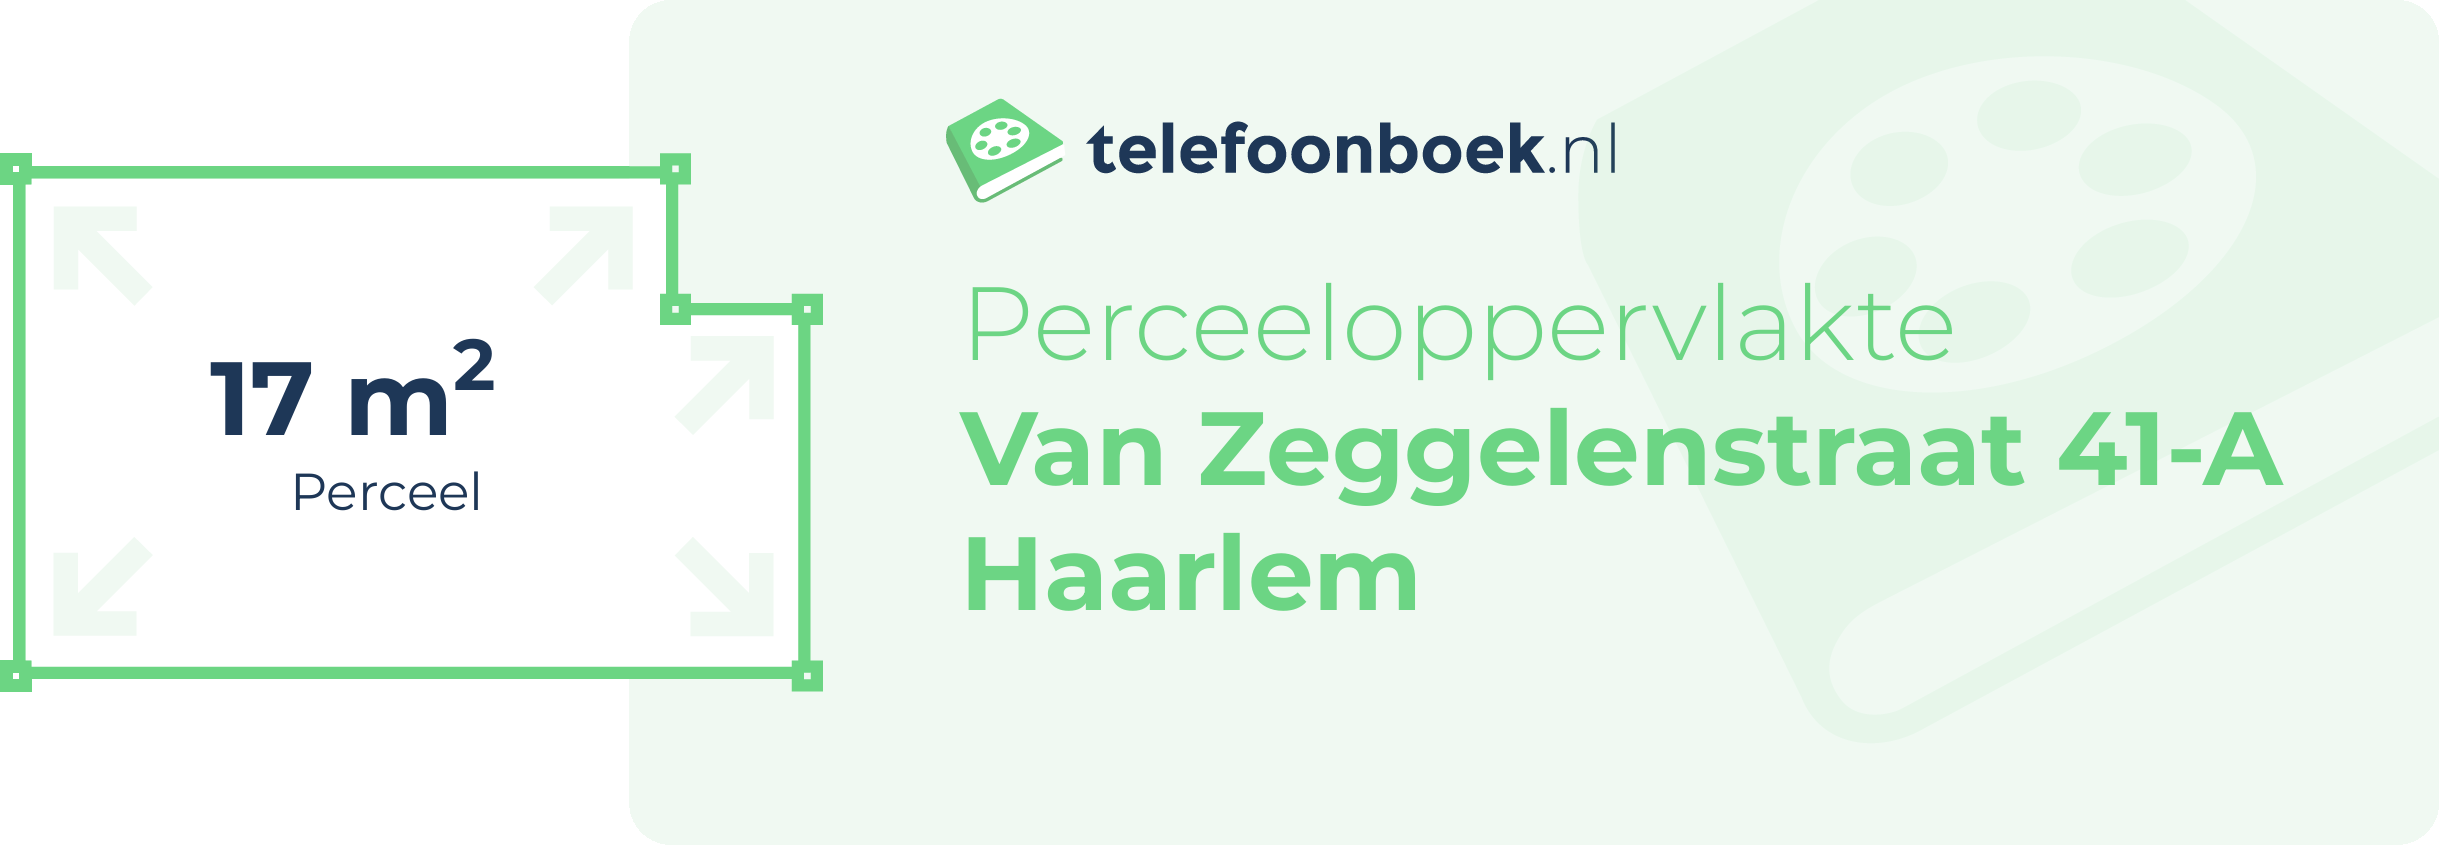 Perceeloppervlakte Van Zeggelenstraat 41-A Haarlem